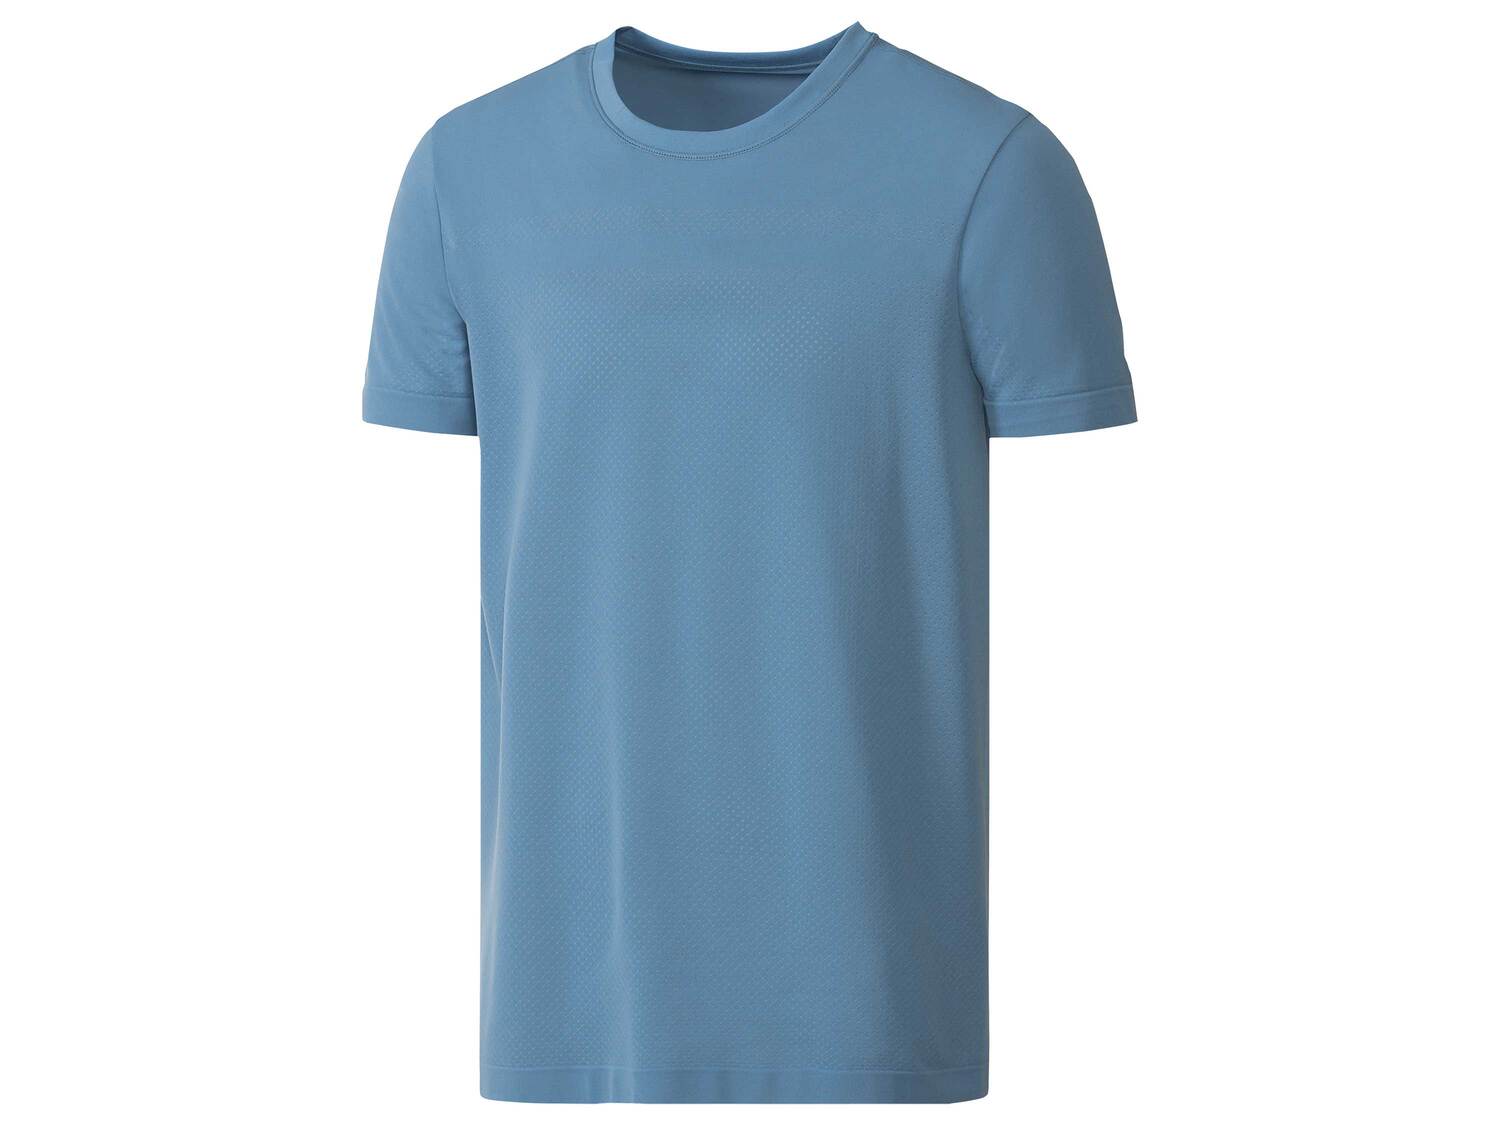 T-shirt technique seamless rafraîchissant , le prix 4.99 € 
- Du M au XL selon ...